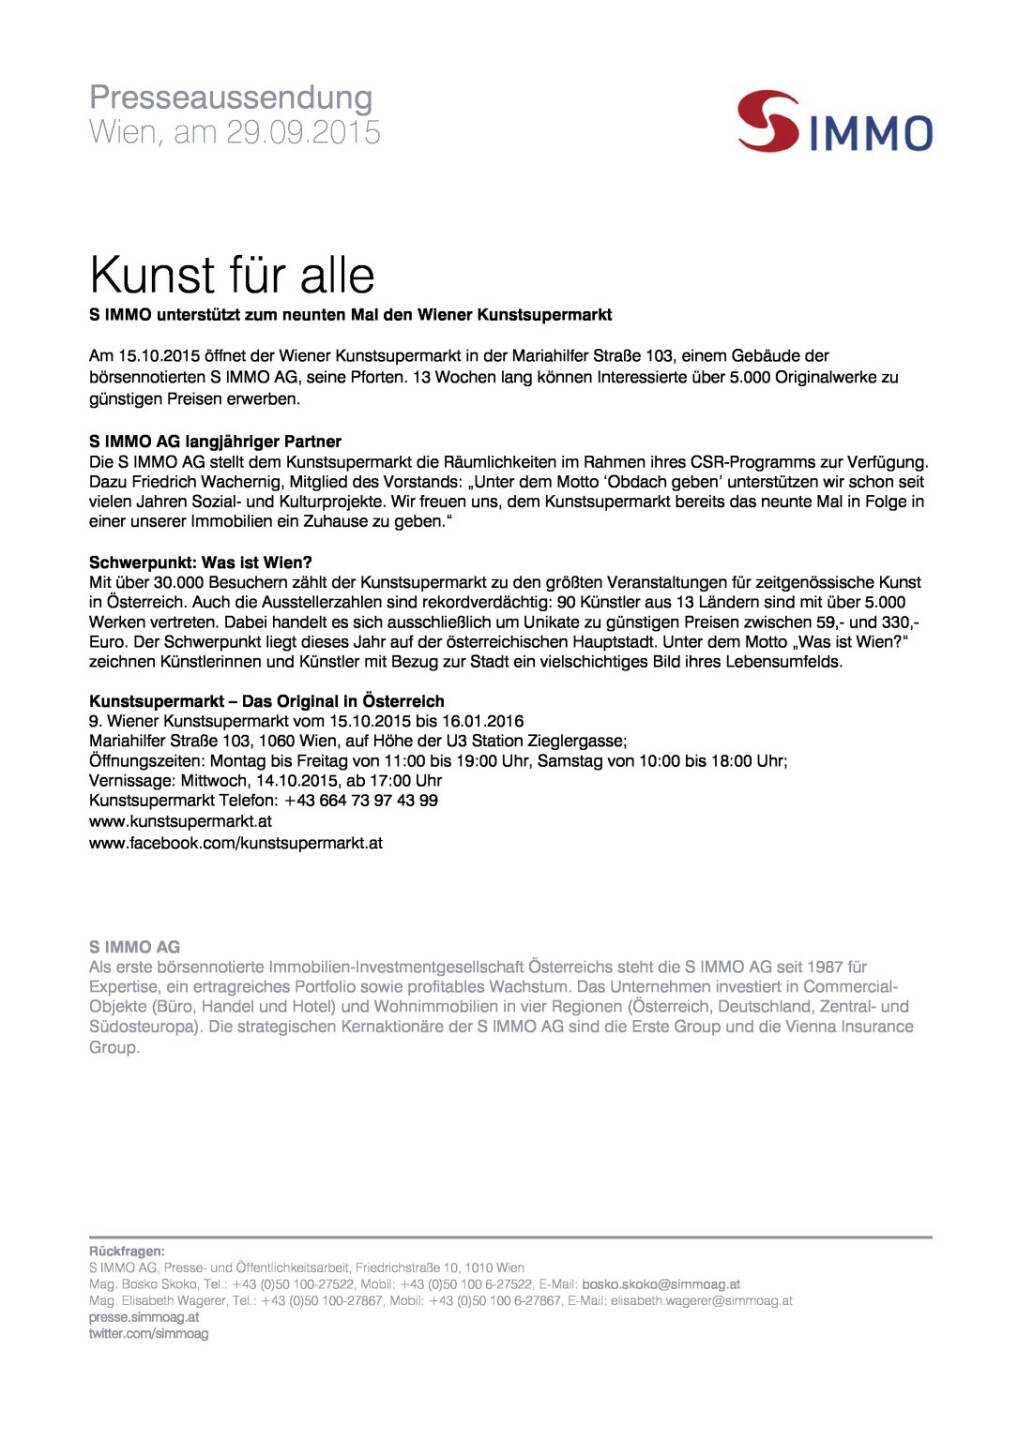 S Immo unterstützt Wiener Kunstsupermarkt, Seite 1/1, komplettes Dokument unter http://boerse-social.com/static/uploads/file_390_s_immo_unterstützt_wiener_kunstsupermarkt.pdf